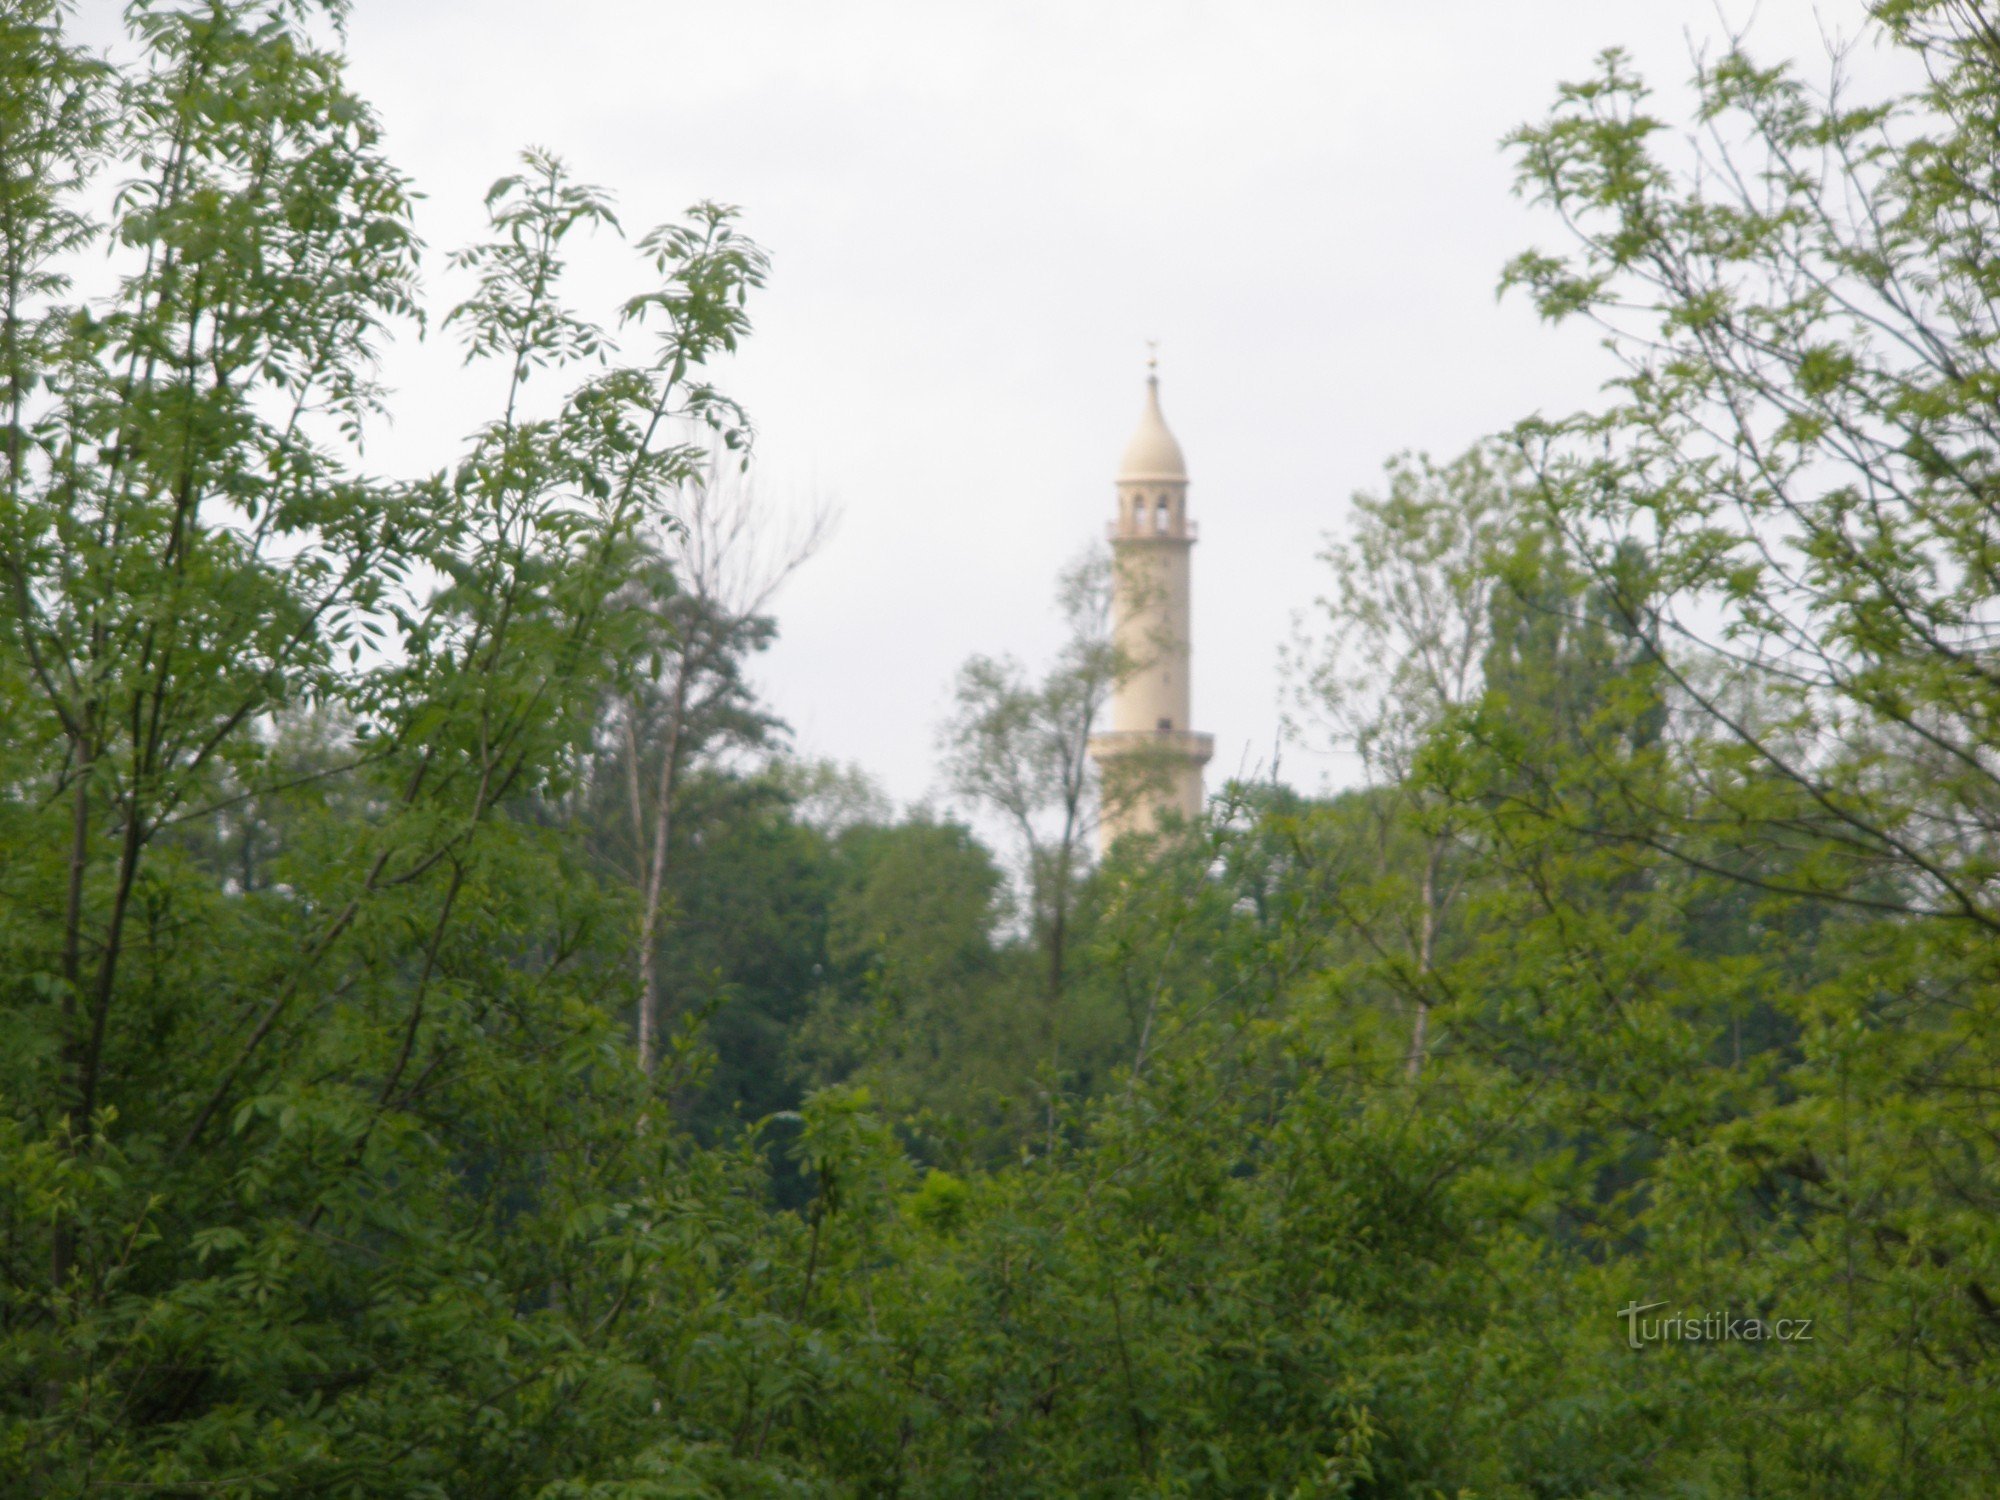 Minaret LVA